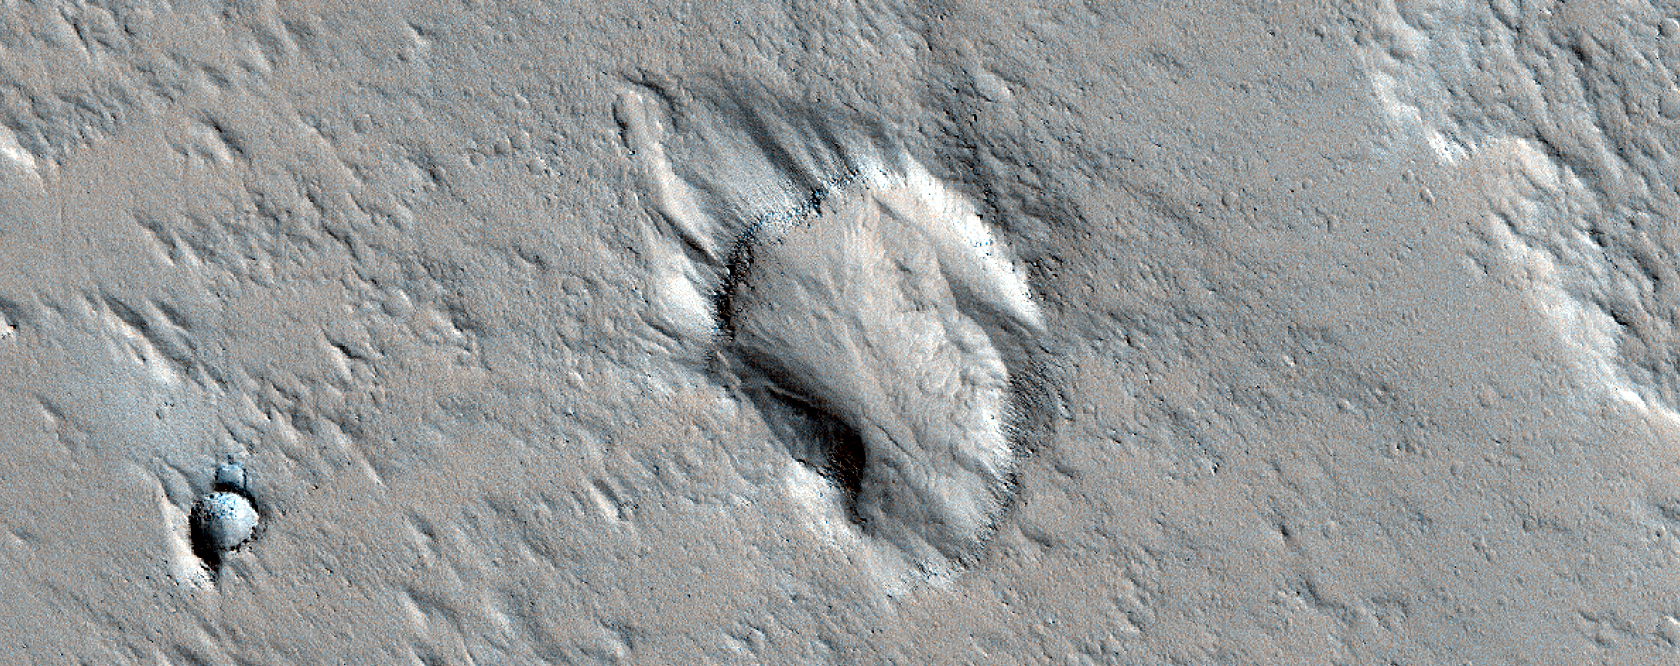 Region Near Olympus Mons
